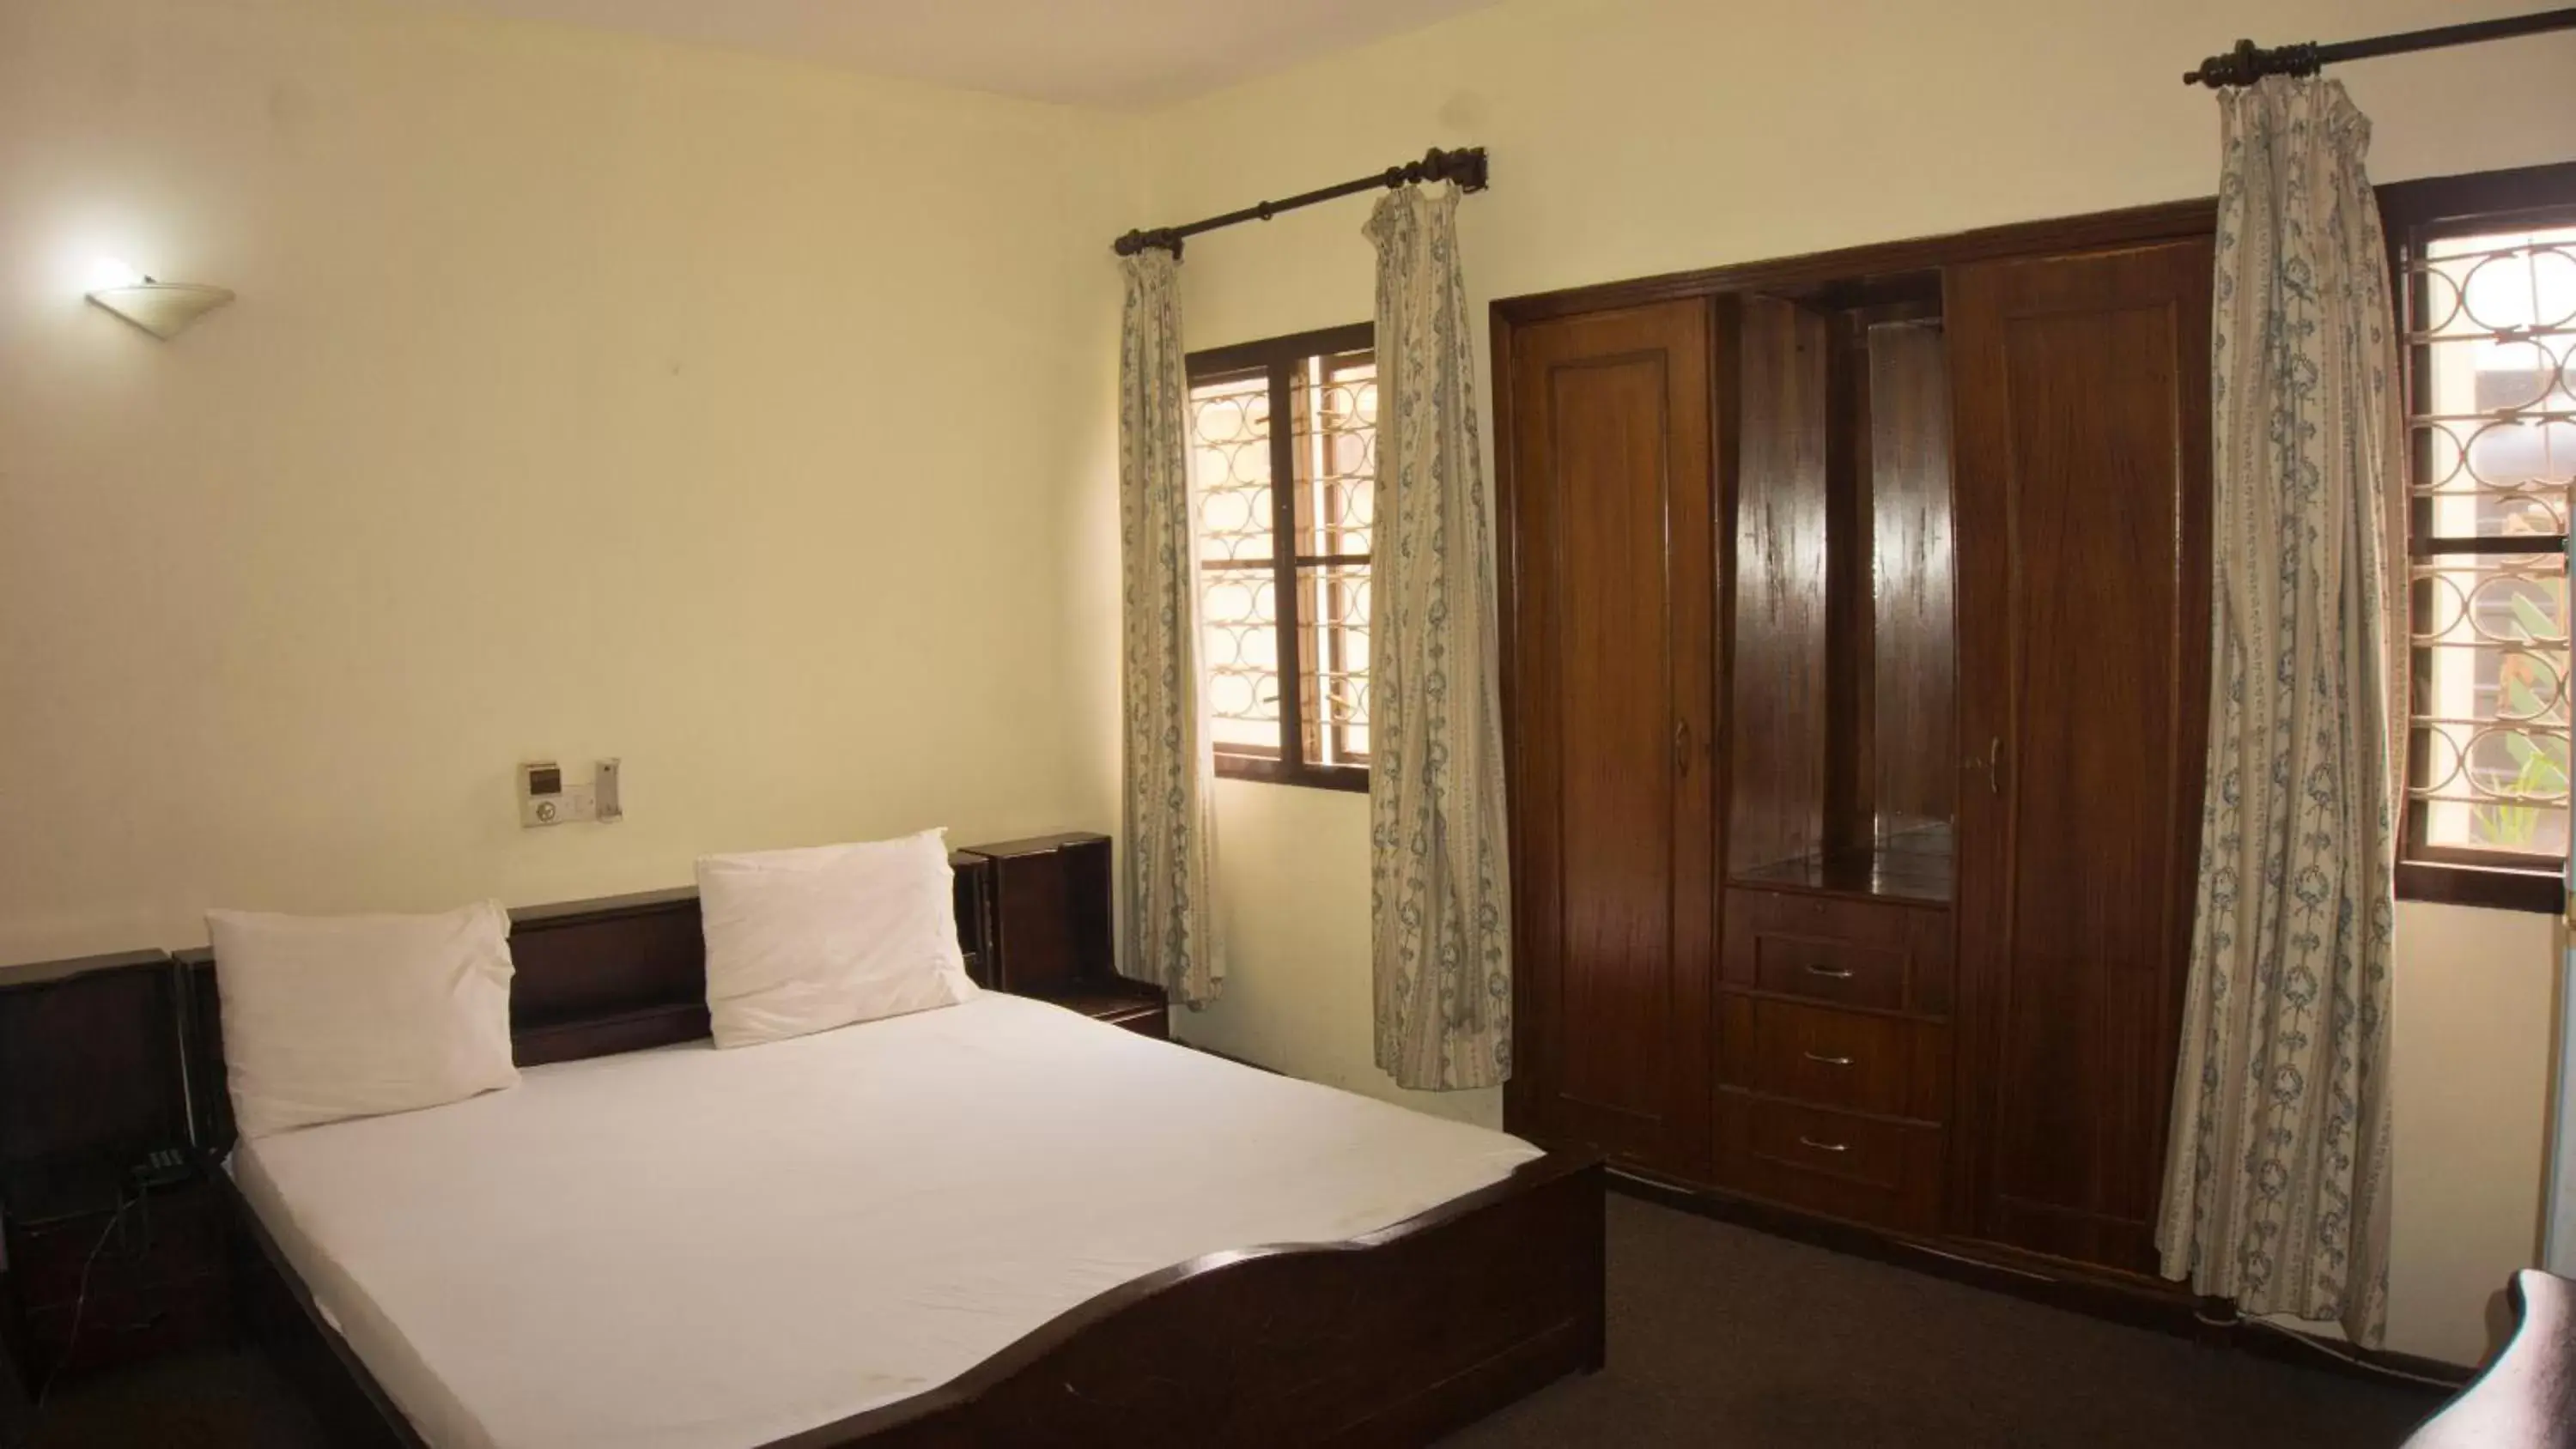 Standard Room in Pekan Hotel